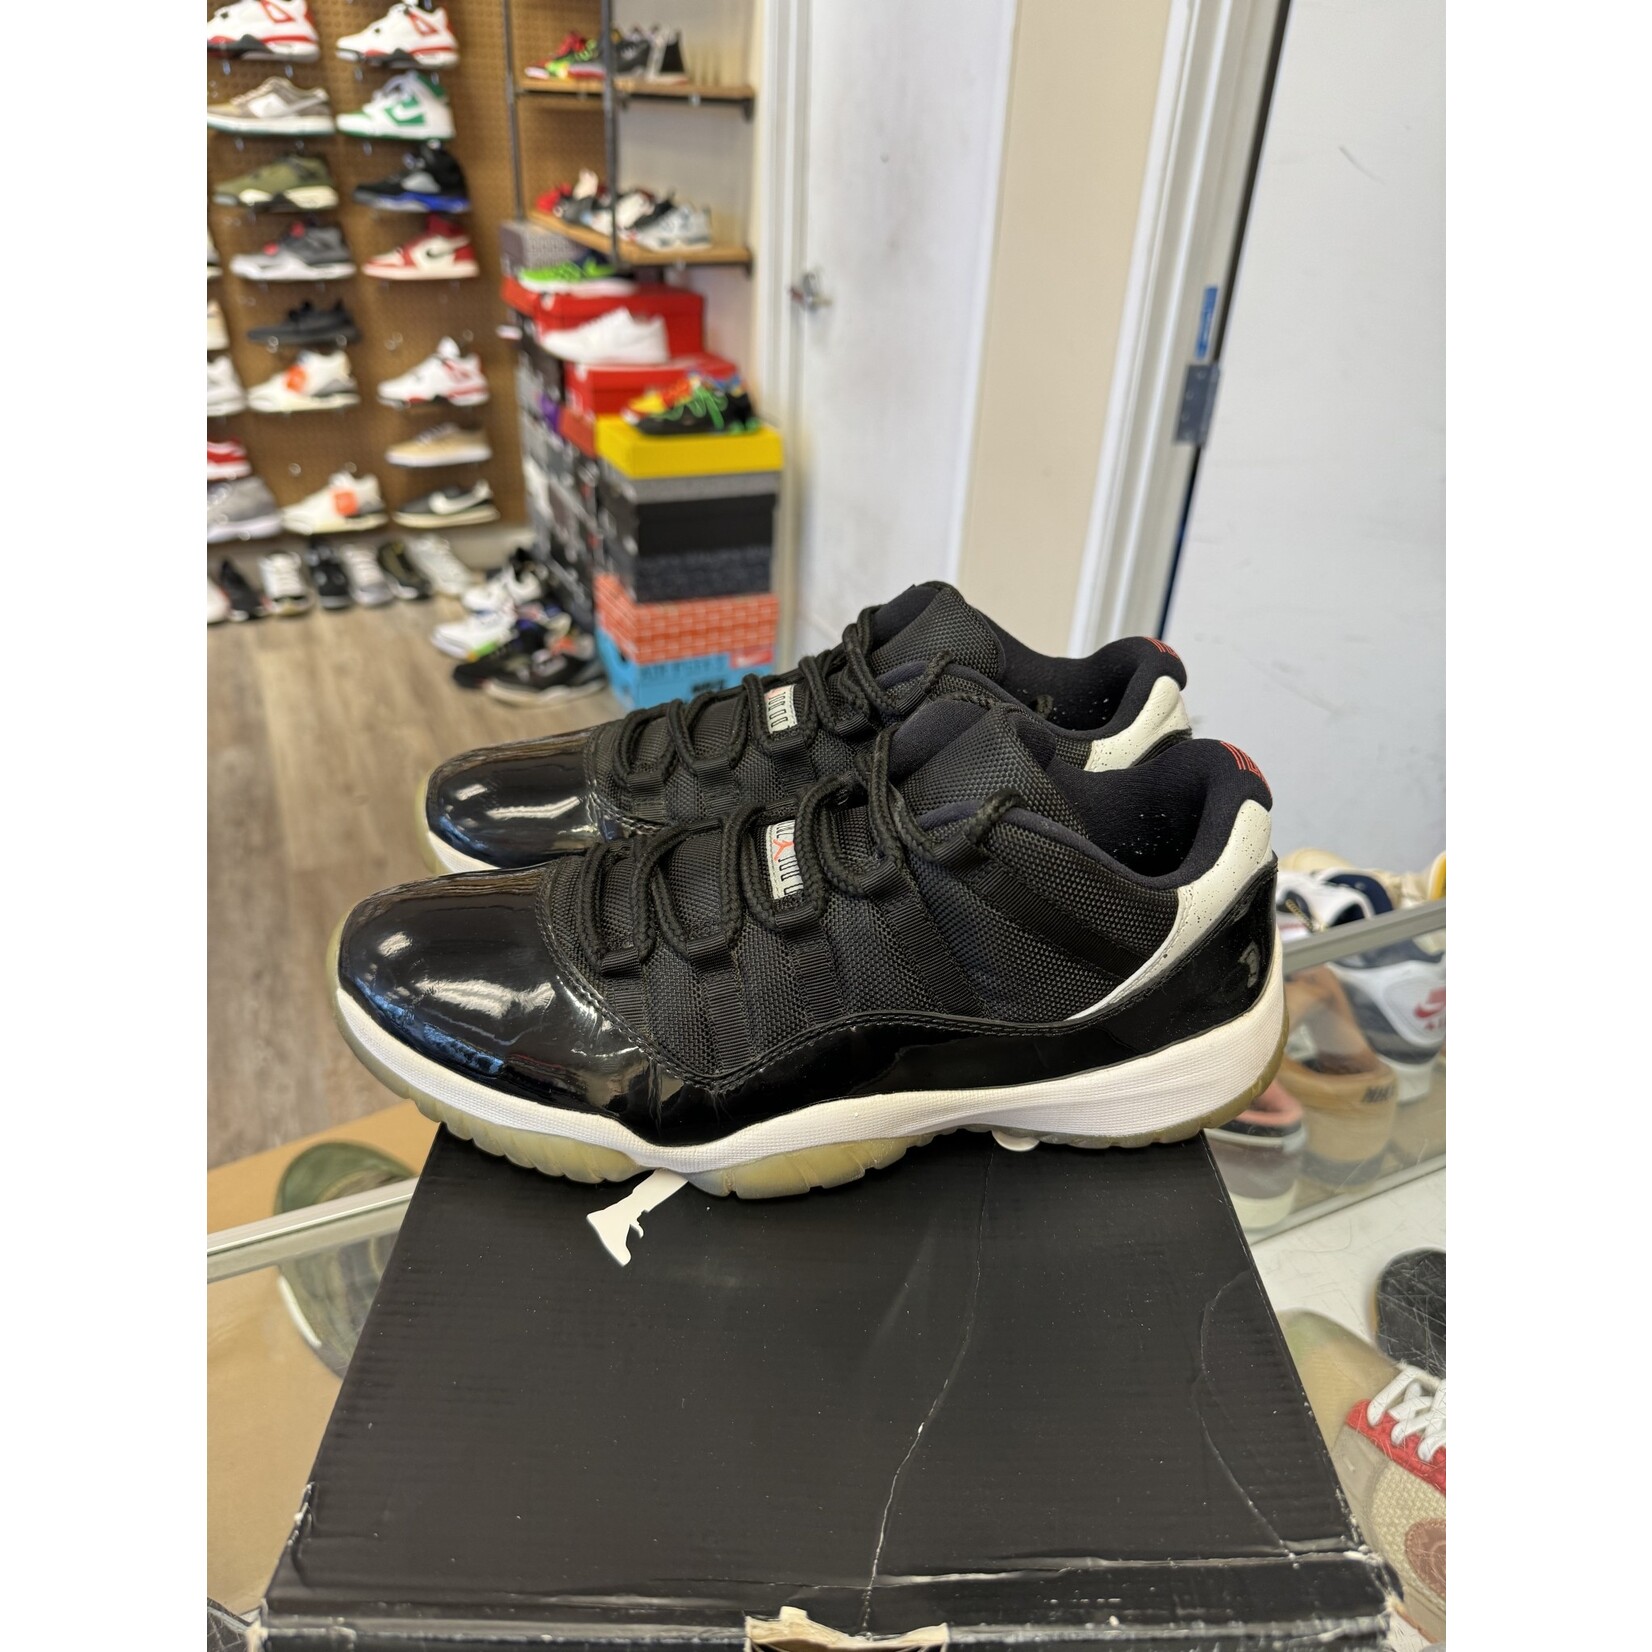 Jordan Jordan 11 Retro Low Infrared Size 11, PREOWNED